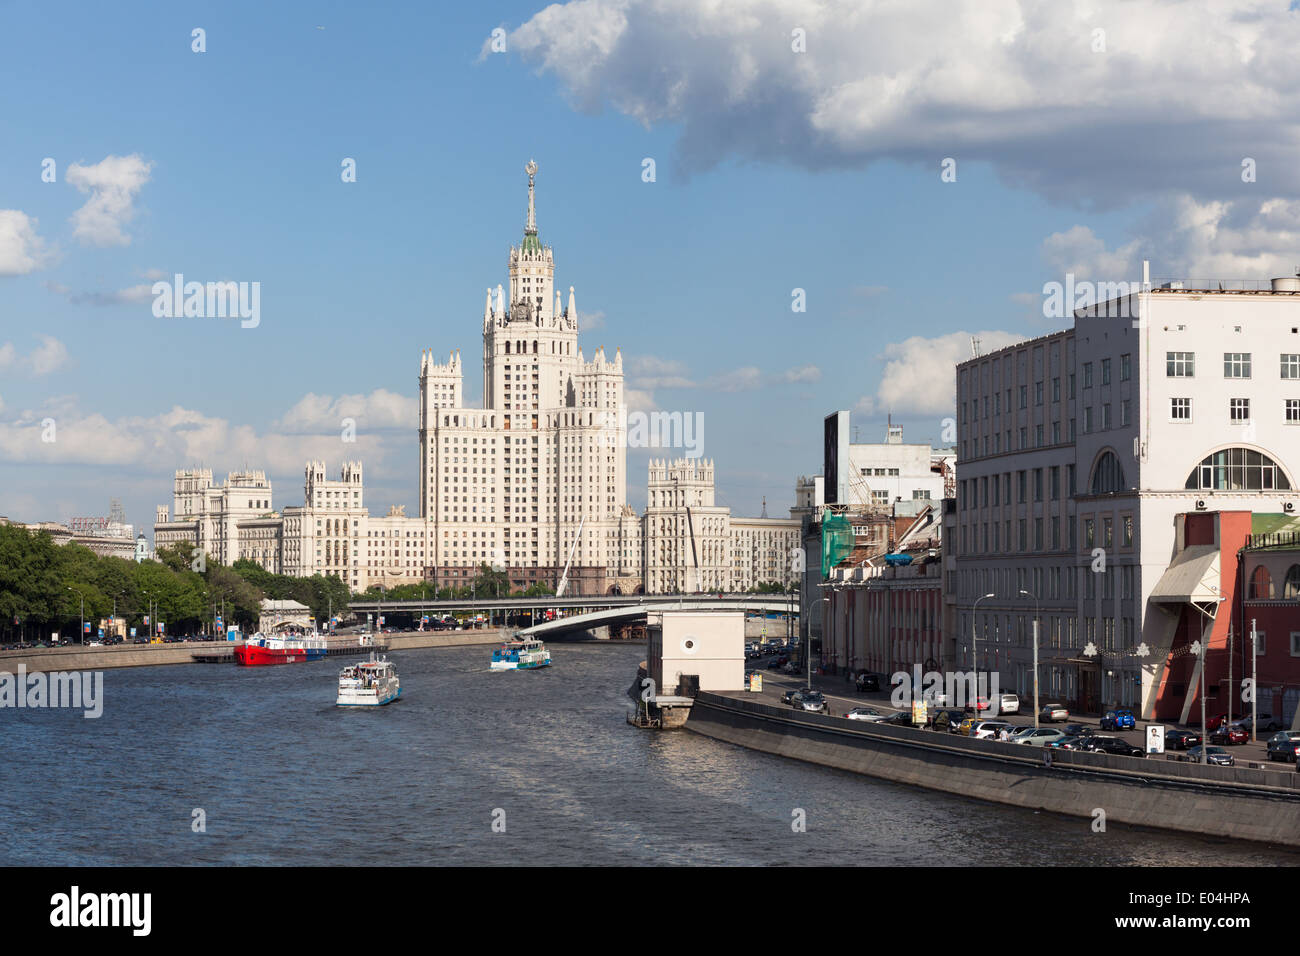 Rues de la région de Moscou avec Kotelnicheskaya Embankment Building (l'un des sept Sœurs) et rivière Moskva, Russie Banque D'Images